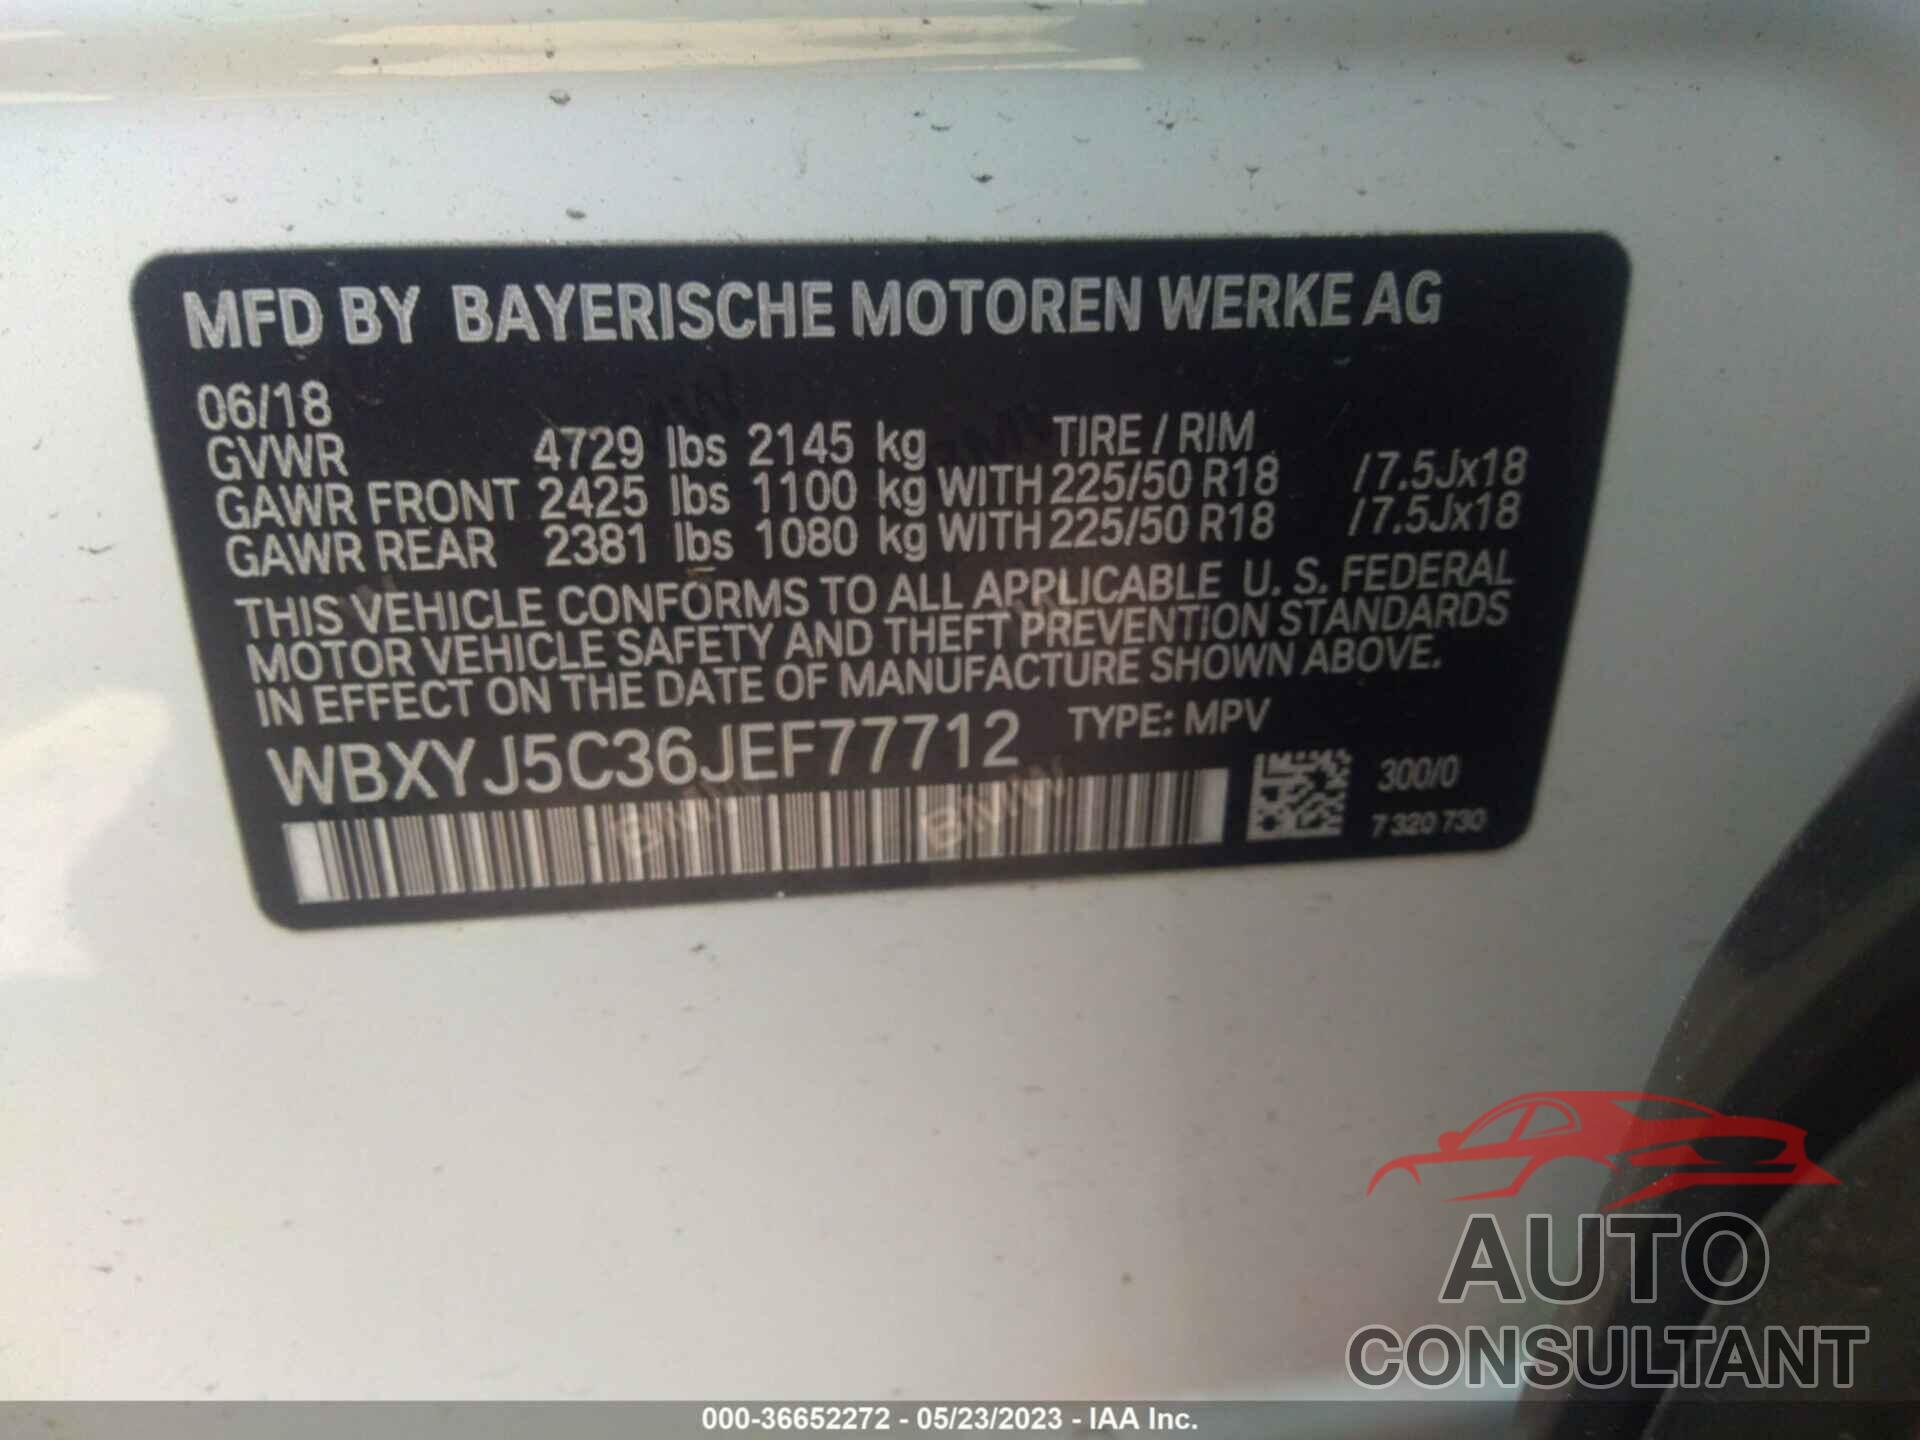 BMW X2 2018 - WBXYJ5C36JEF77712